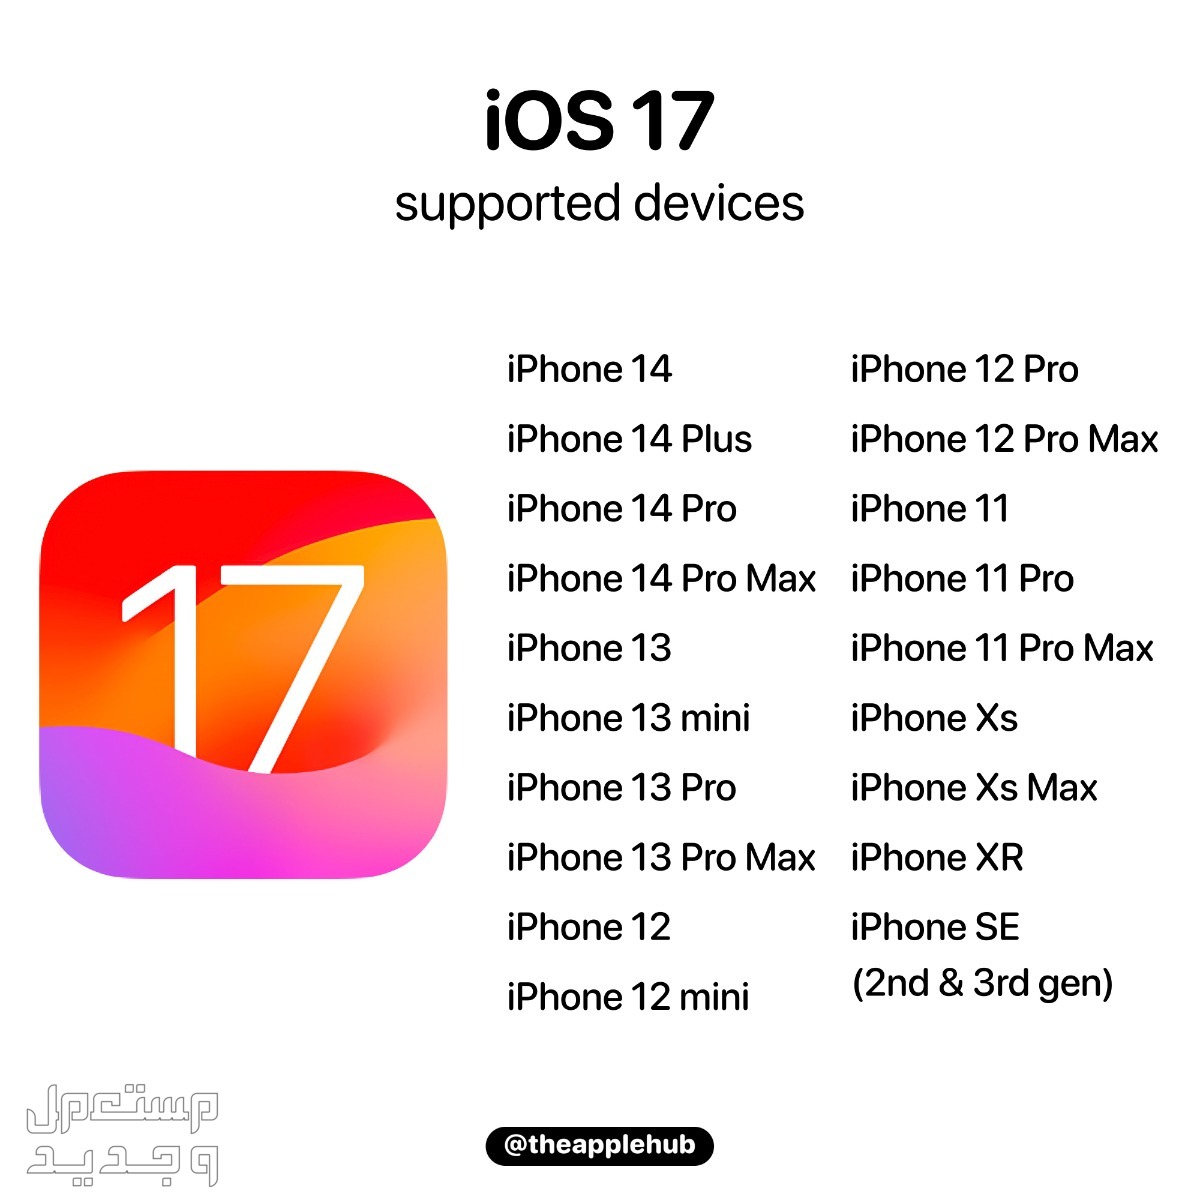 نظام iOS 17 لهواتف ايفون بمميزات جديدة تعرف عليها